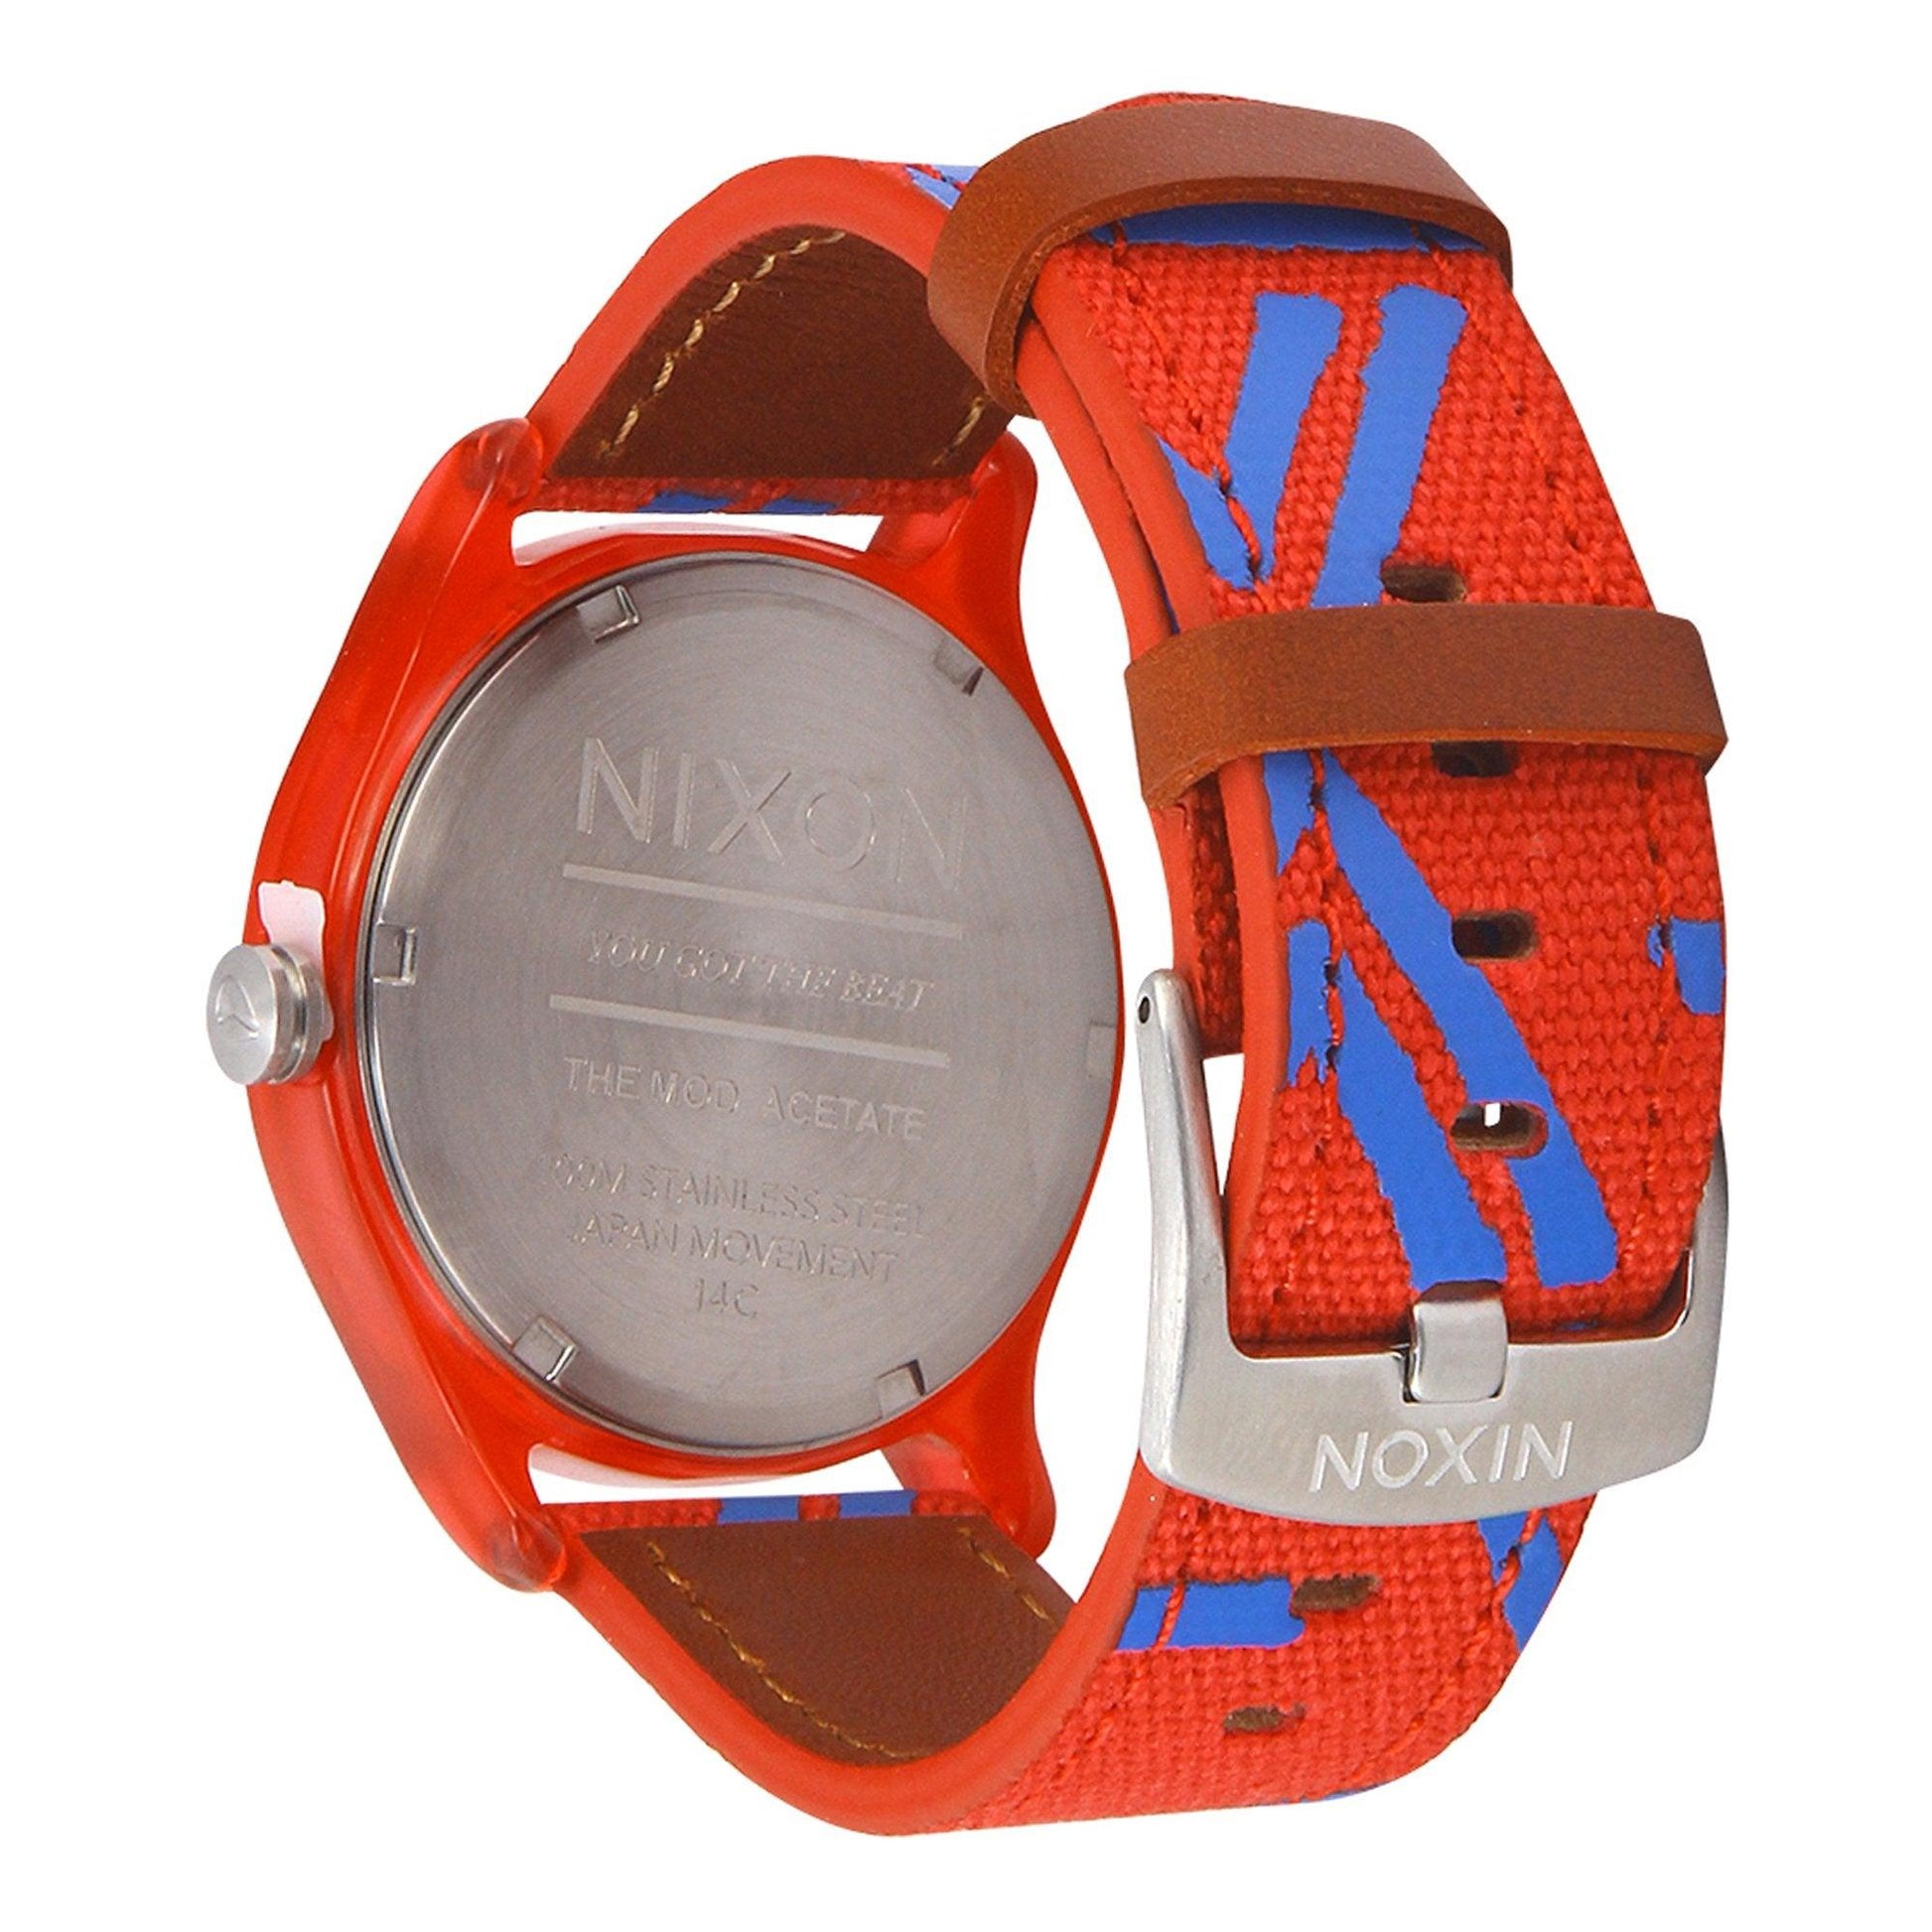 Nixon Acetate A402-200 orologio donna al quarzo - Kechiq Concept Boutique